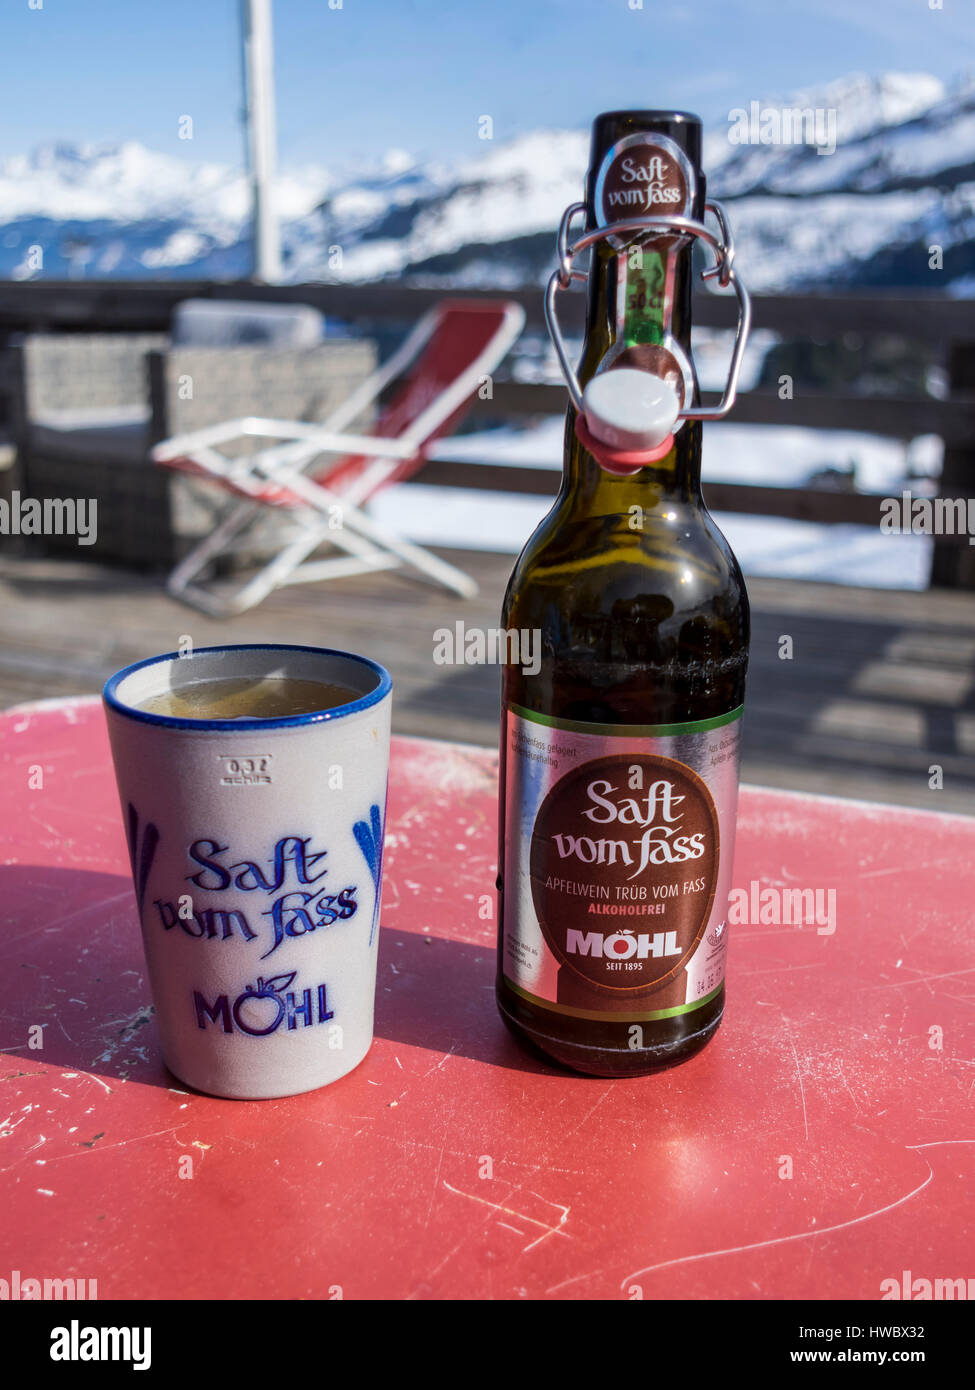 Bottiglia di analcolici Möhl Apfelwein 'Saft vom Fass', un tradizionale svizzero di sidro, con un bicchiere di ceramica. Sfondo alpino. Foto Stock